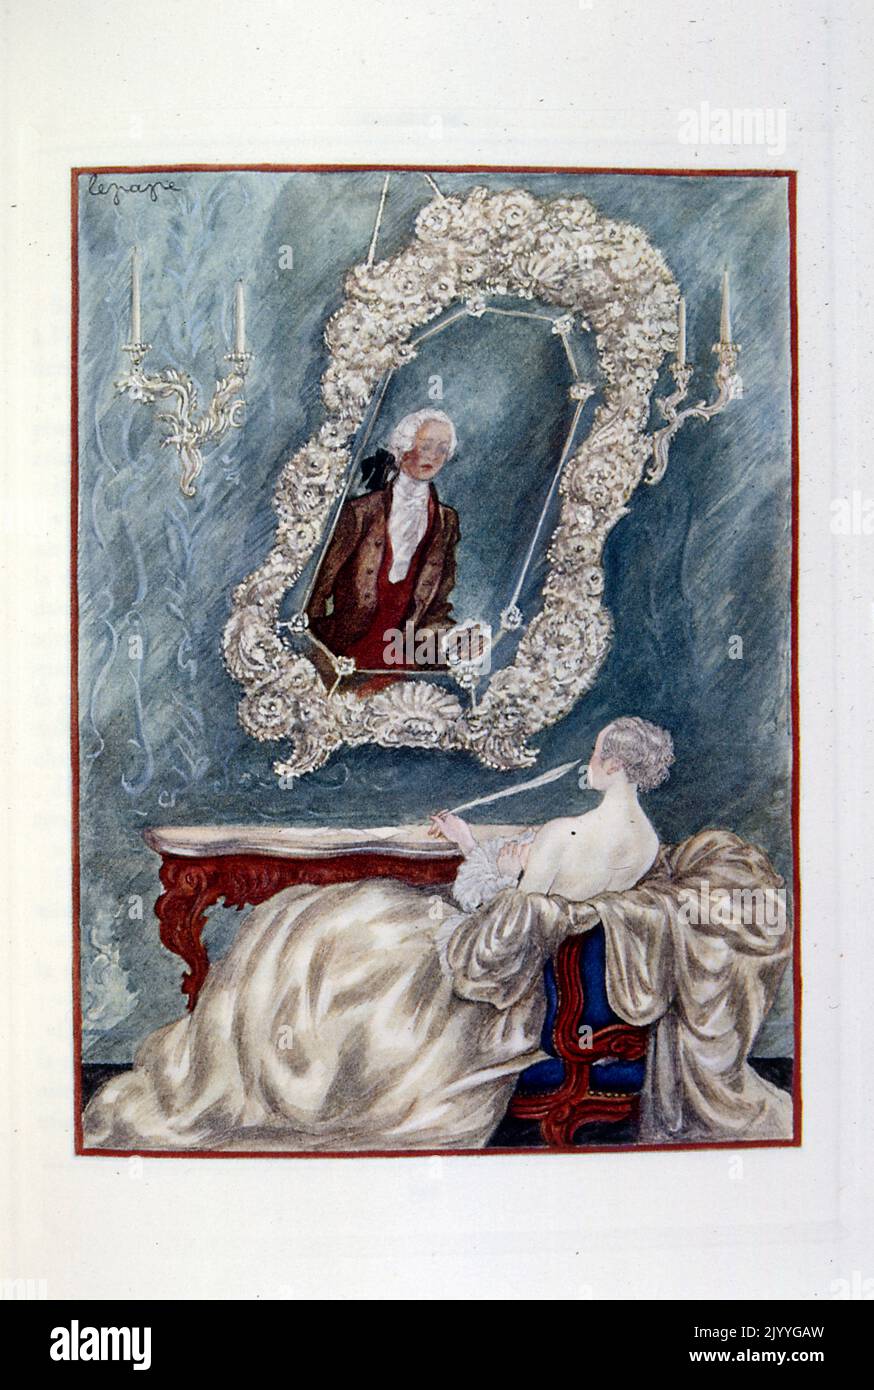 Farbige Illustration aus 'oeuvres posthumes' von Alfred de Musset, die eine Dame zeigt, die einen Brief mit einer Federkiel an einem Schreibtisch schreibt. Illustriert von Georges Lepape. Stockfoto